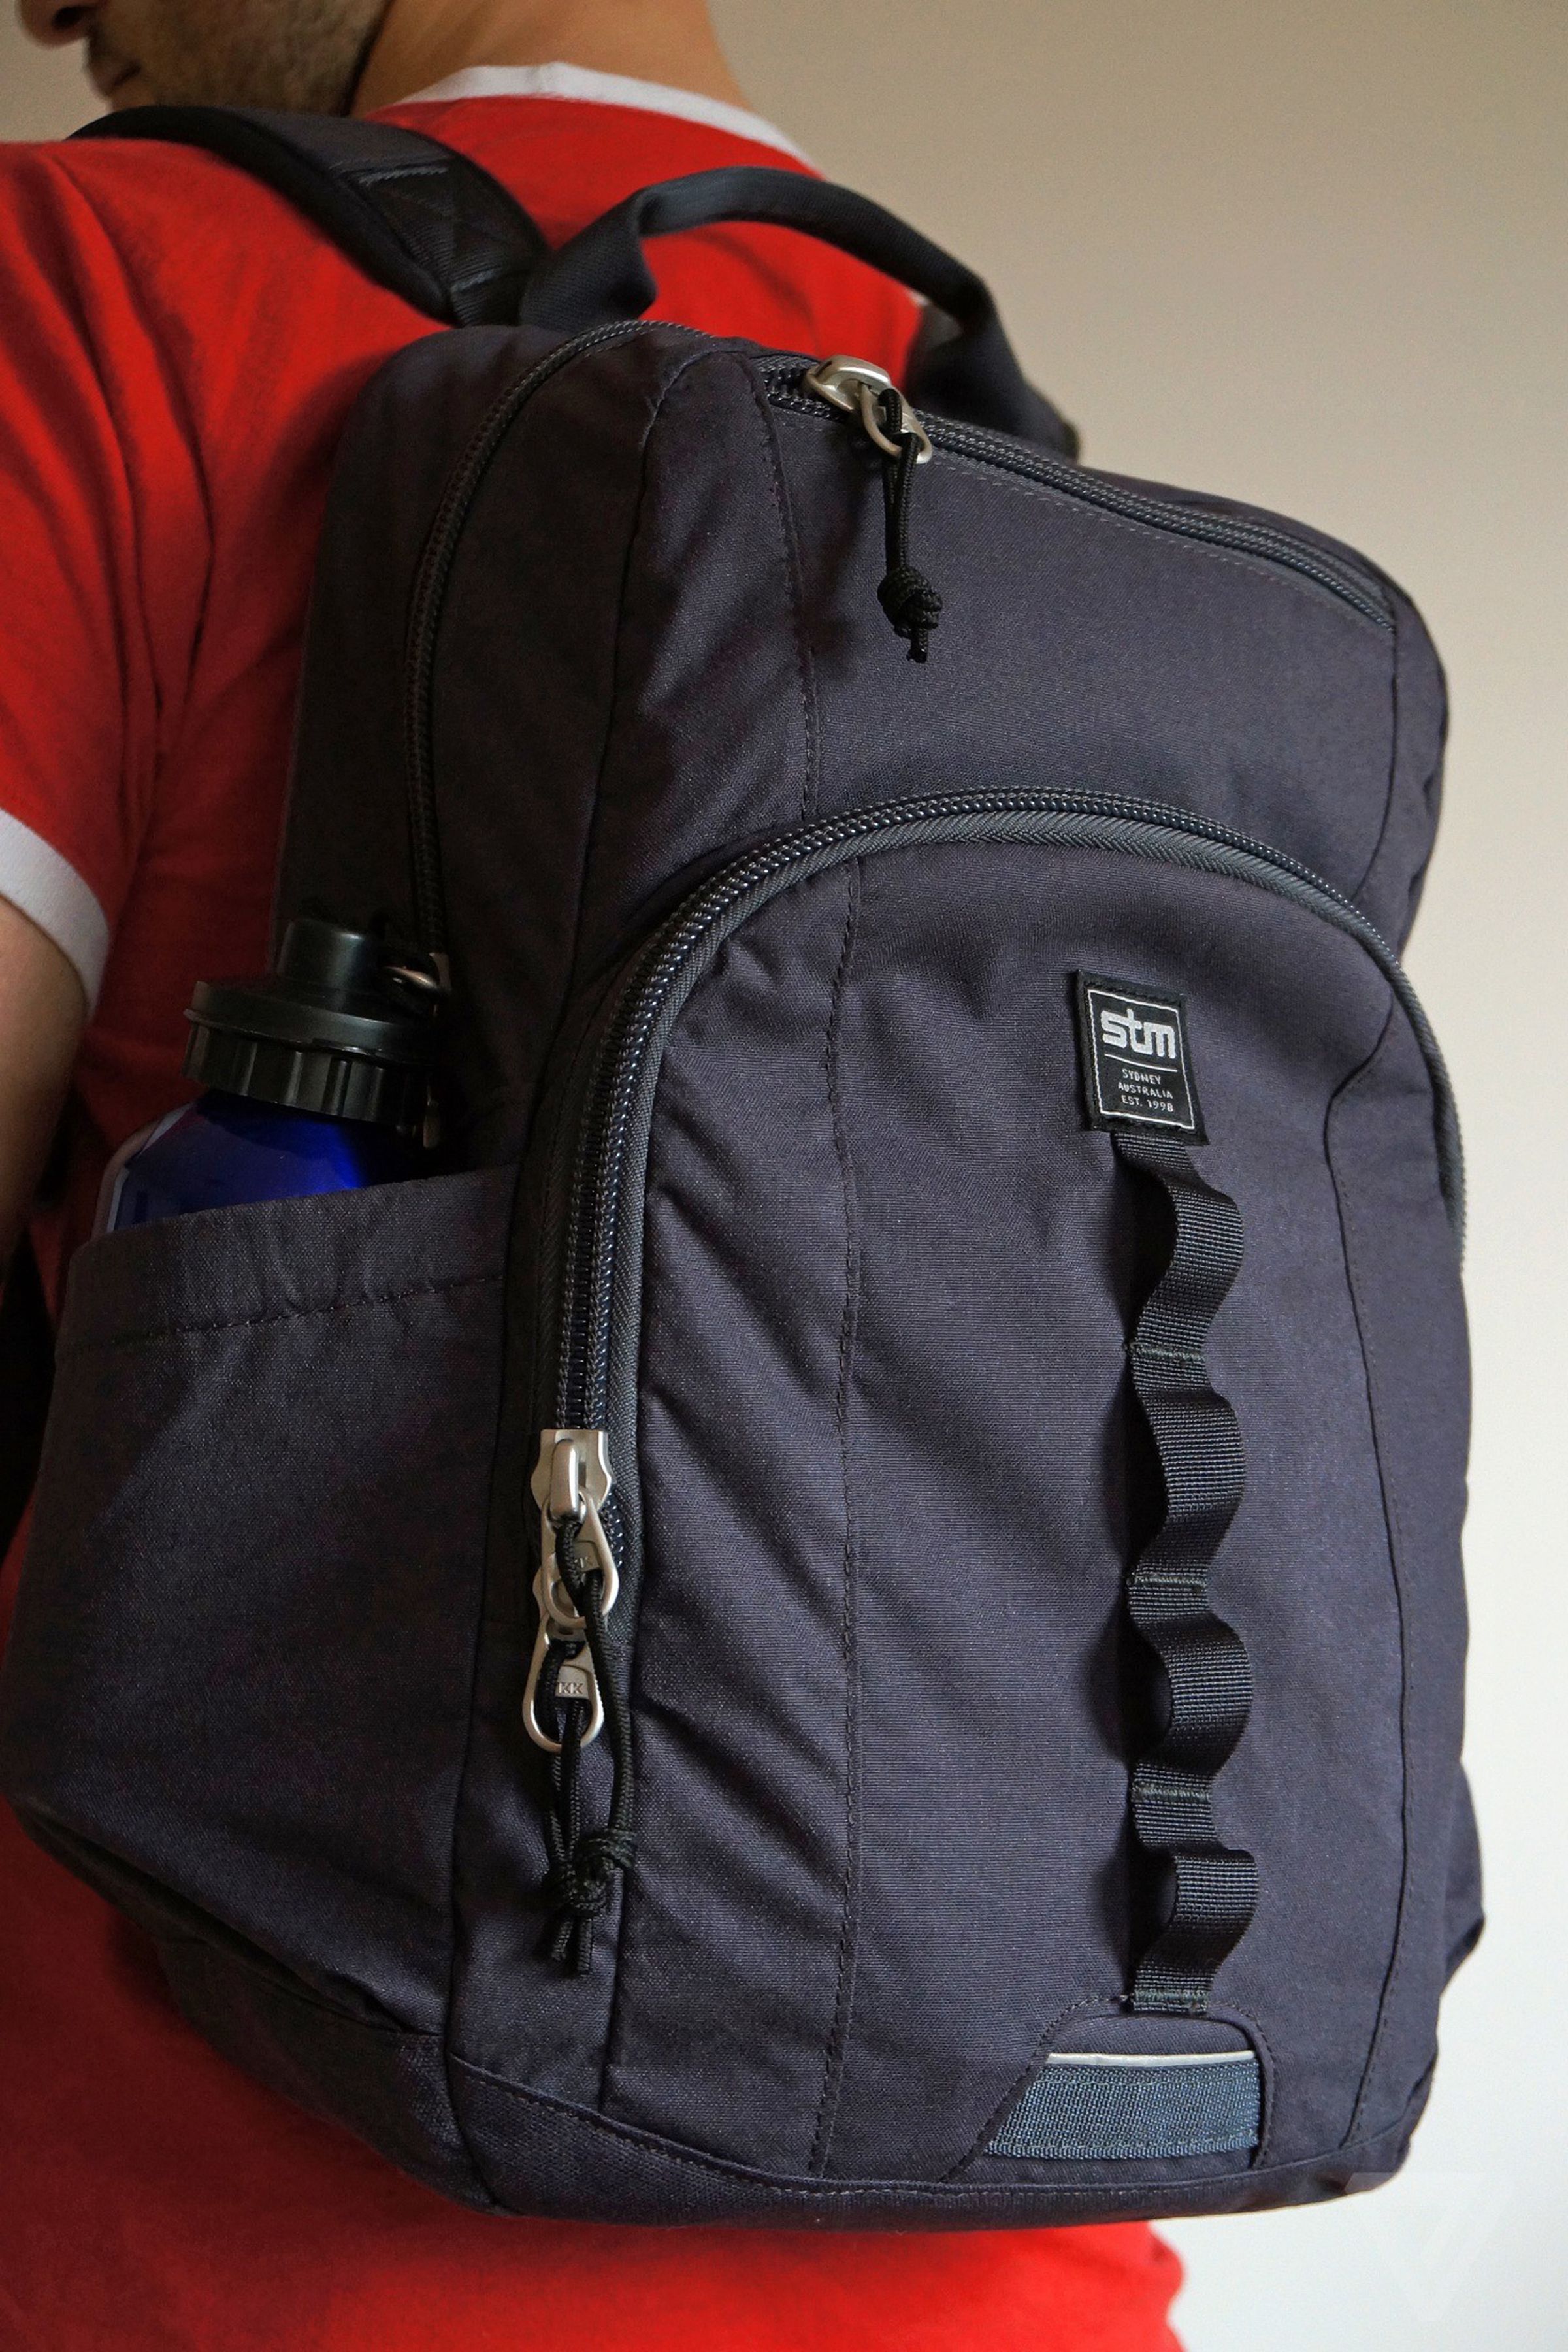 STM Trestle backpack